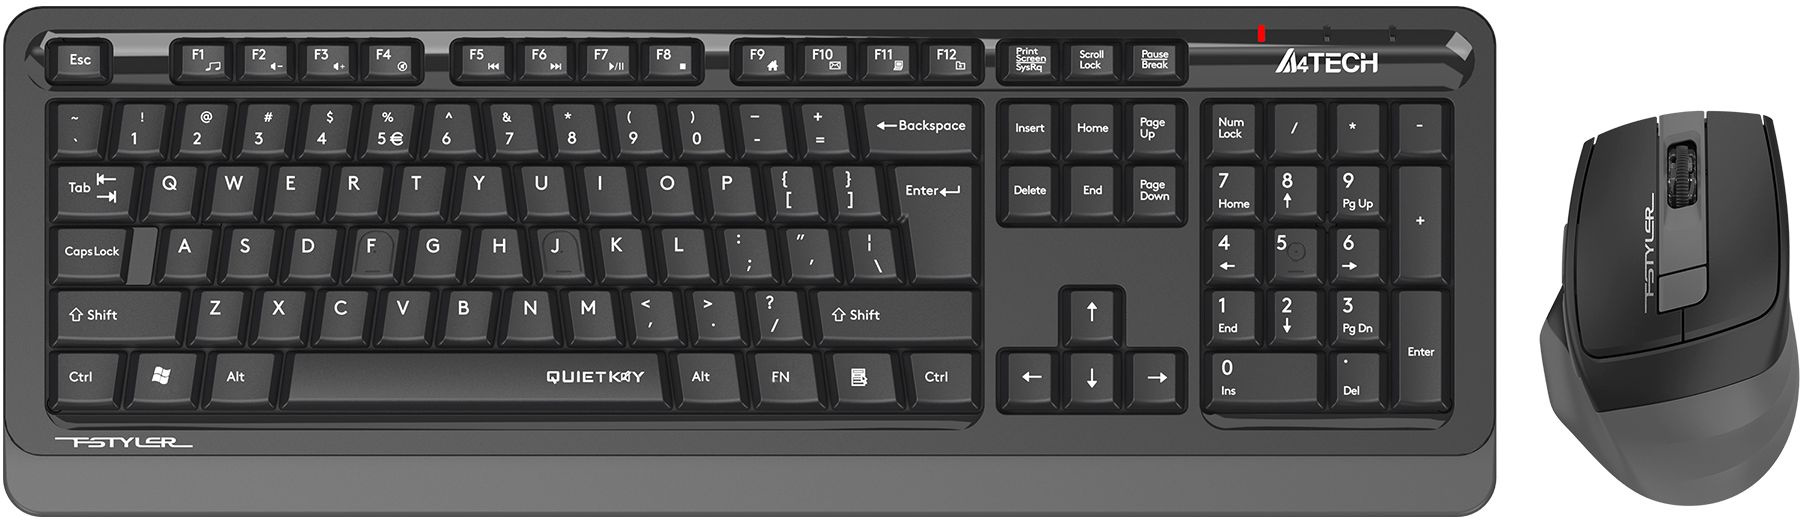 Клавиатура + мышь A4Tech Fstyler FGS1035Q, беспроводная, USB, черный/серый (FGS1035Q GREY)